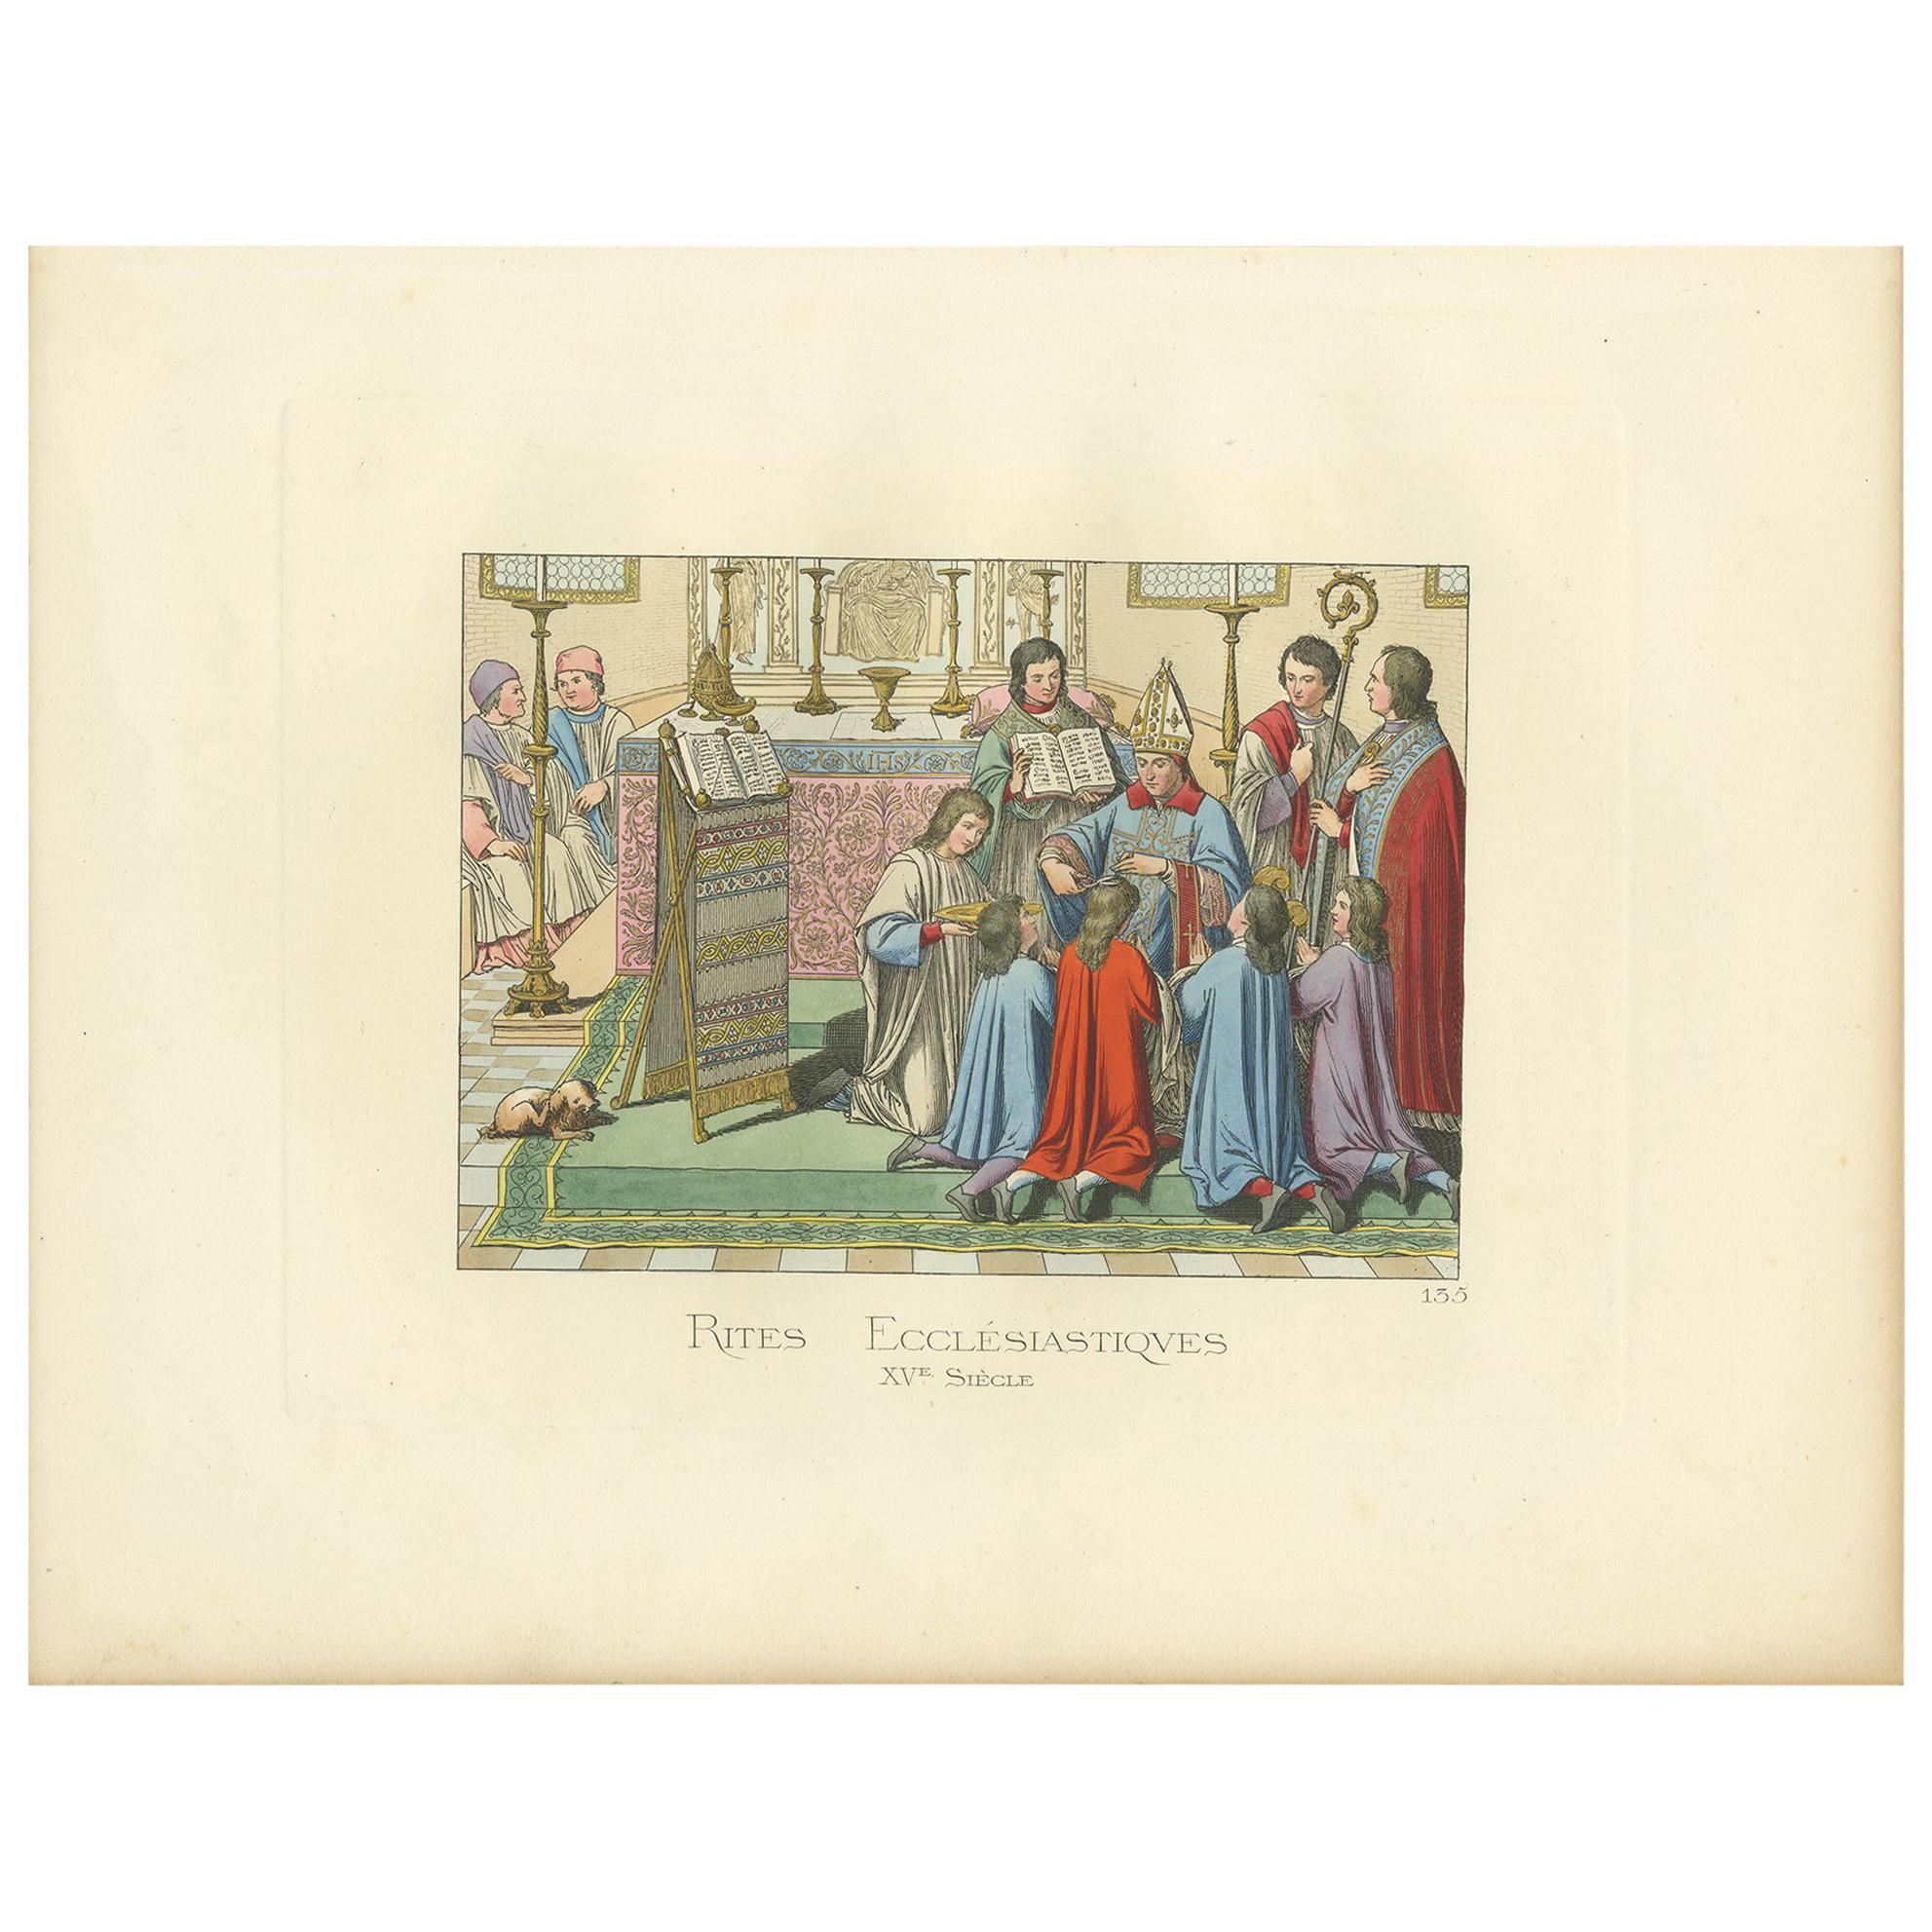 Impression ancienne de Rites ecclésiastiques, 15e siècle, par Bonnard, 1860